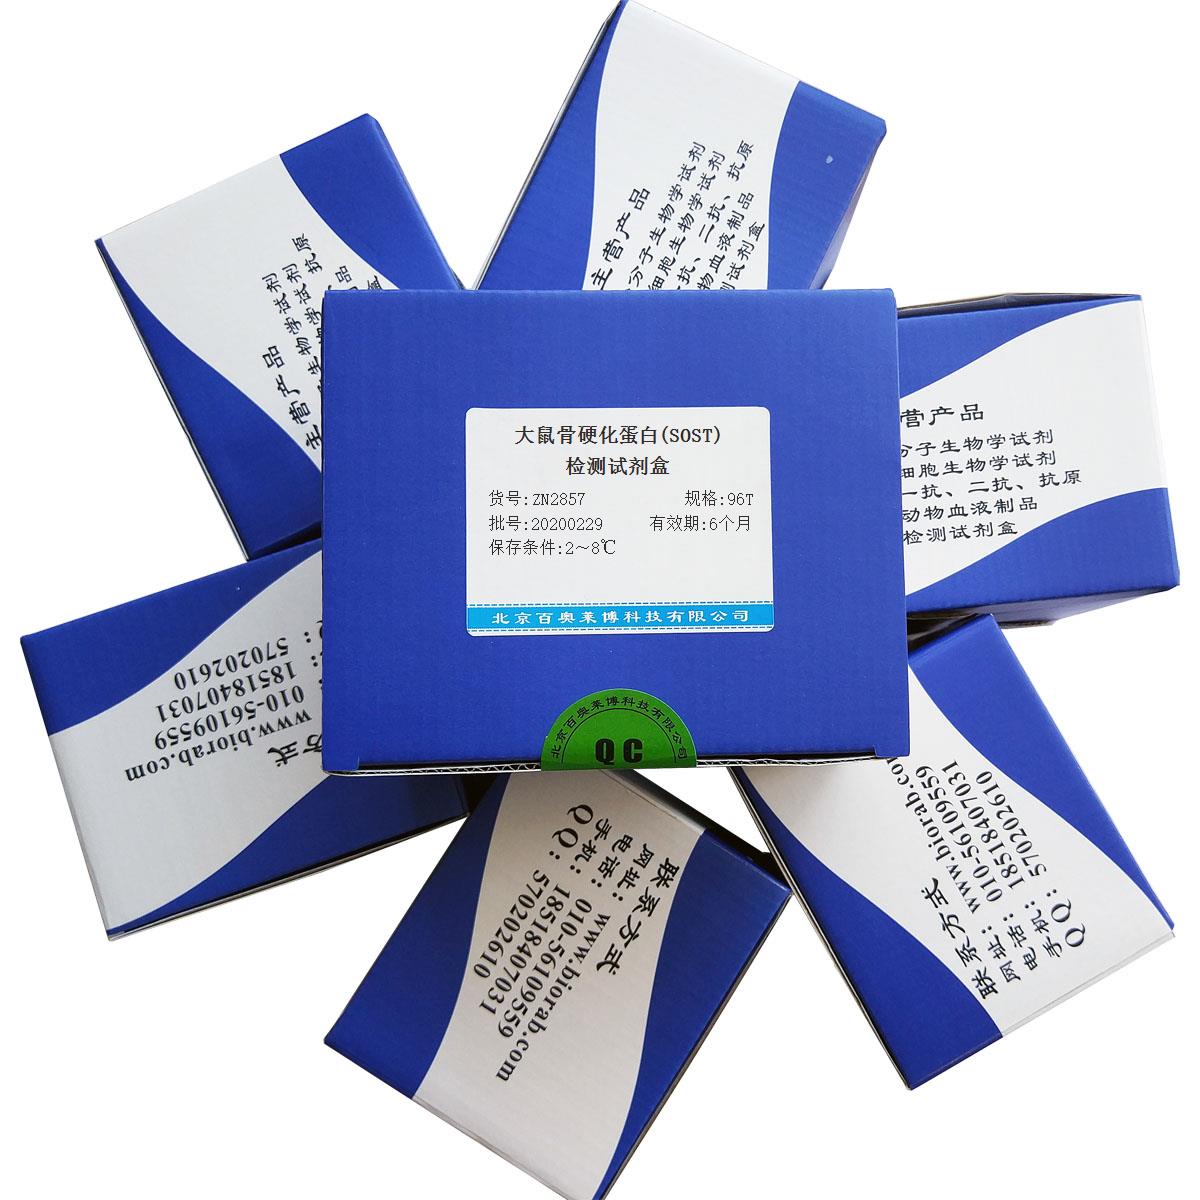 大鼠骨硬化蛋白(SOST)检测试剂盒北京品牌